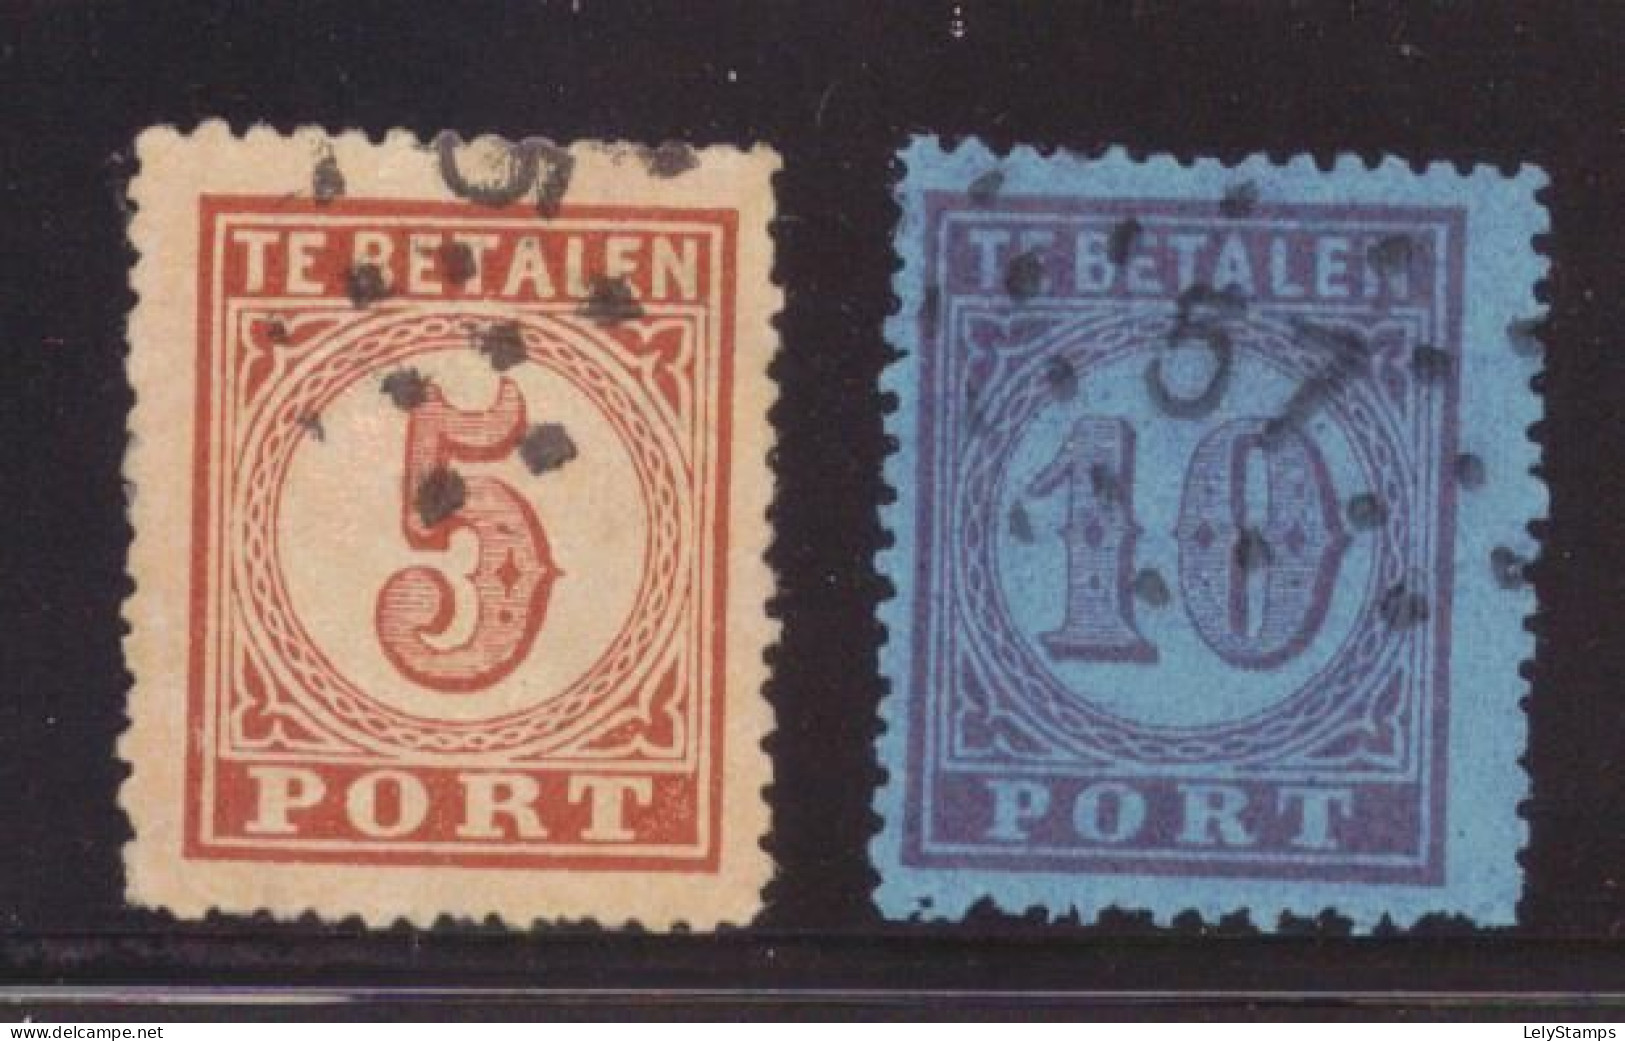 Nederland / Niederlande / Pays Bas / Netherlands Port 1 & Port 2 Used (1870) - Postage Due